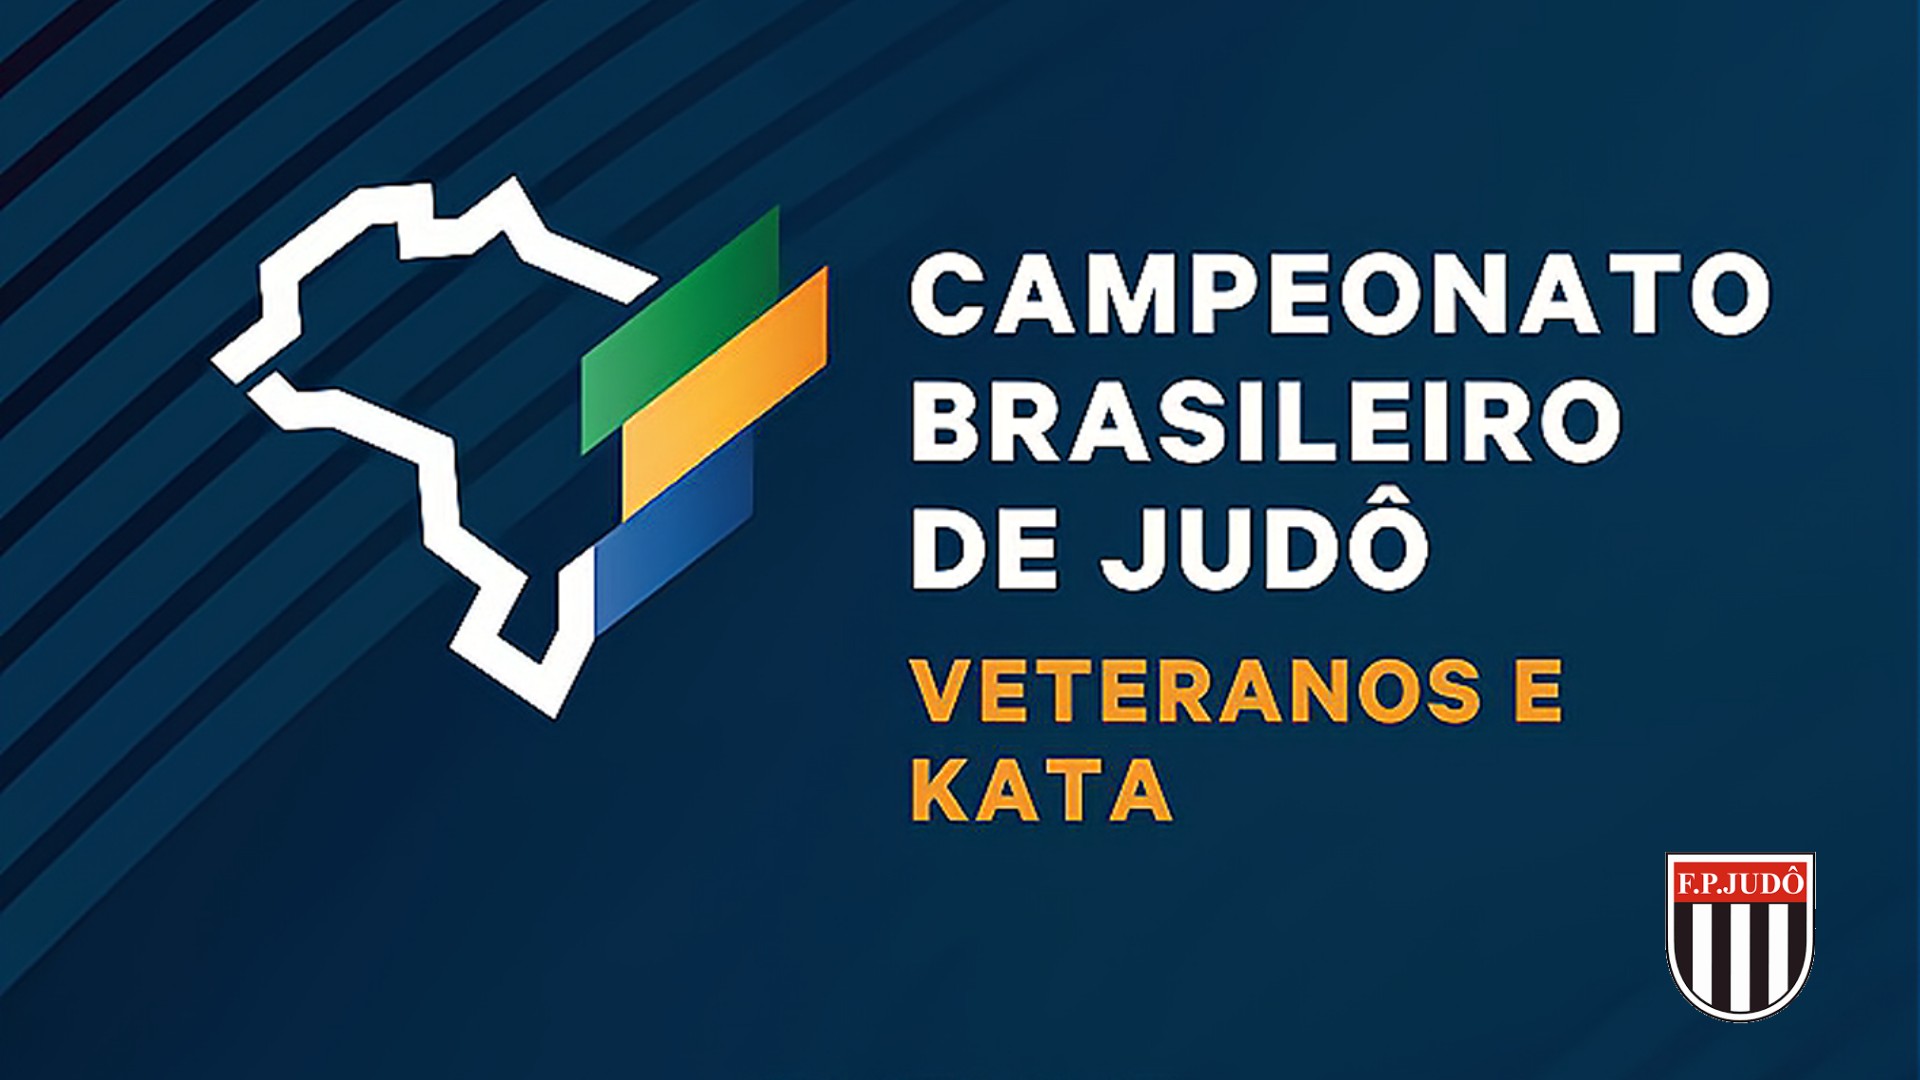 Campeonato Brasileiro Veteranos e Kata